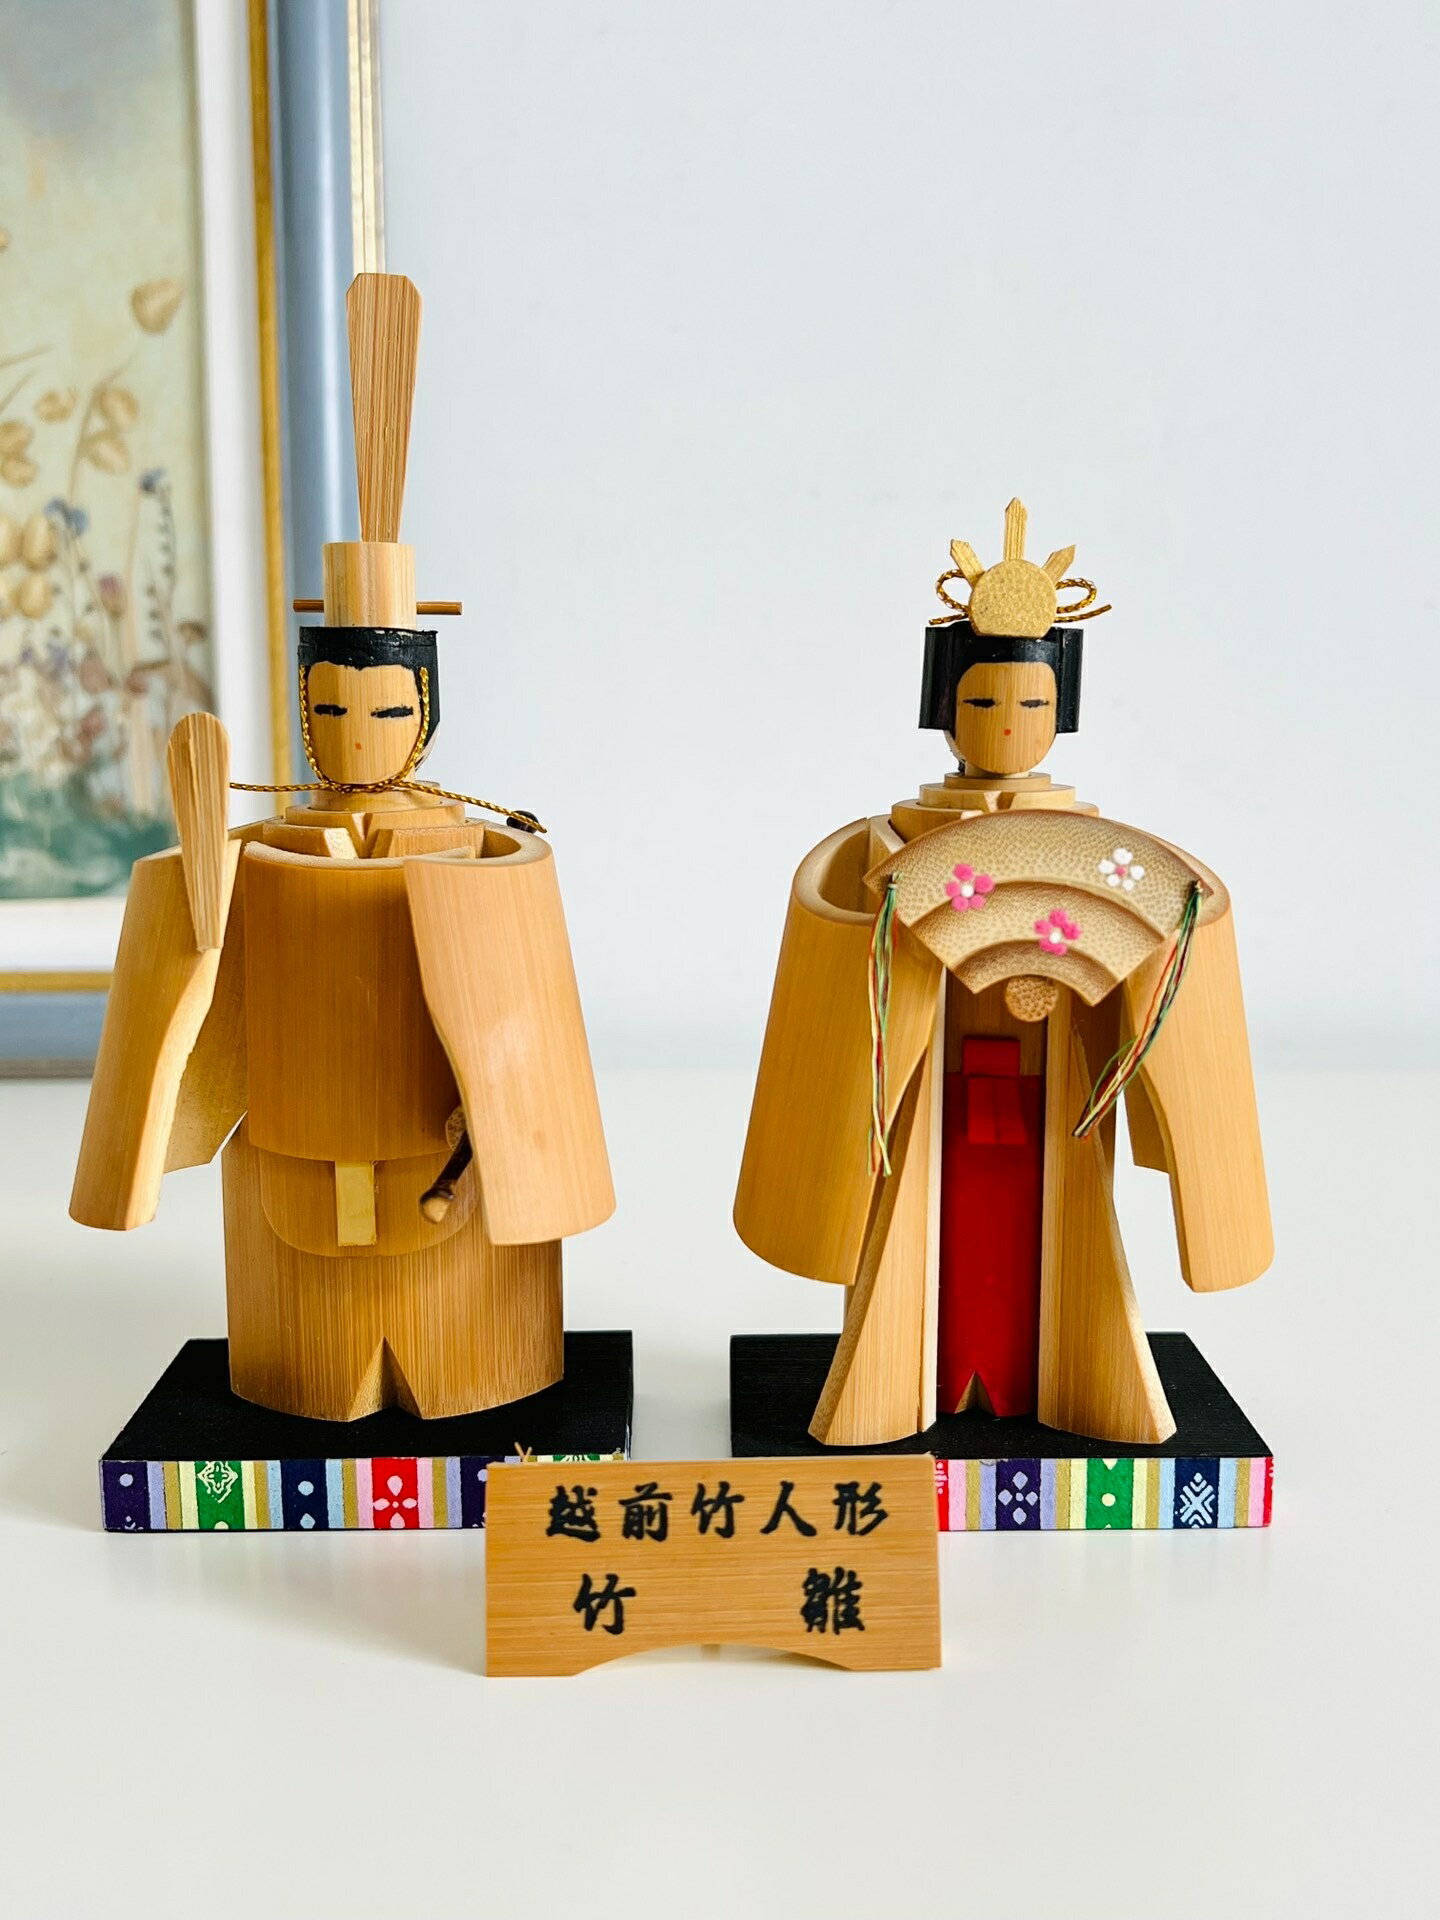 一對日本昭和 鄉土玩具 越前竹人形人偶置物擺飾